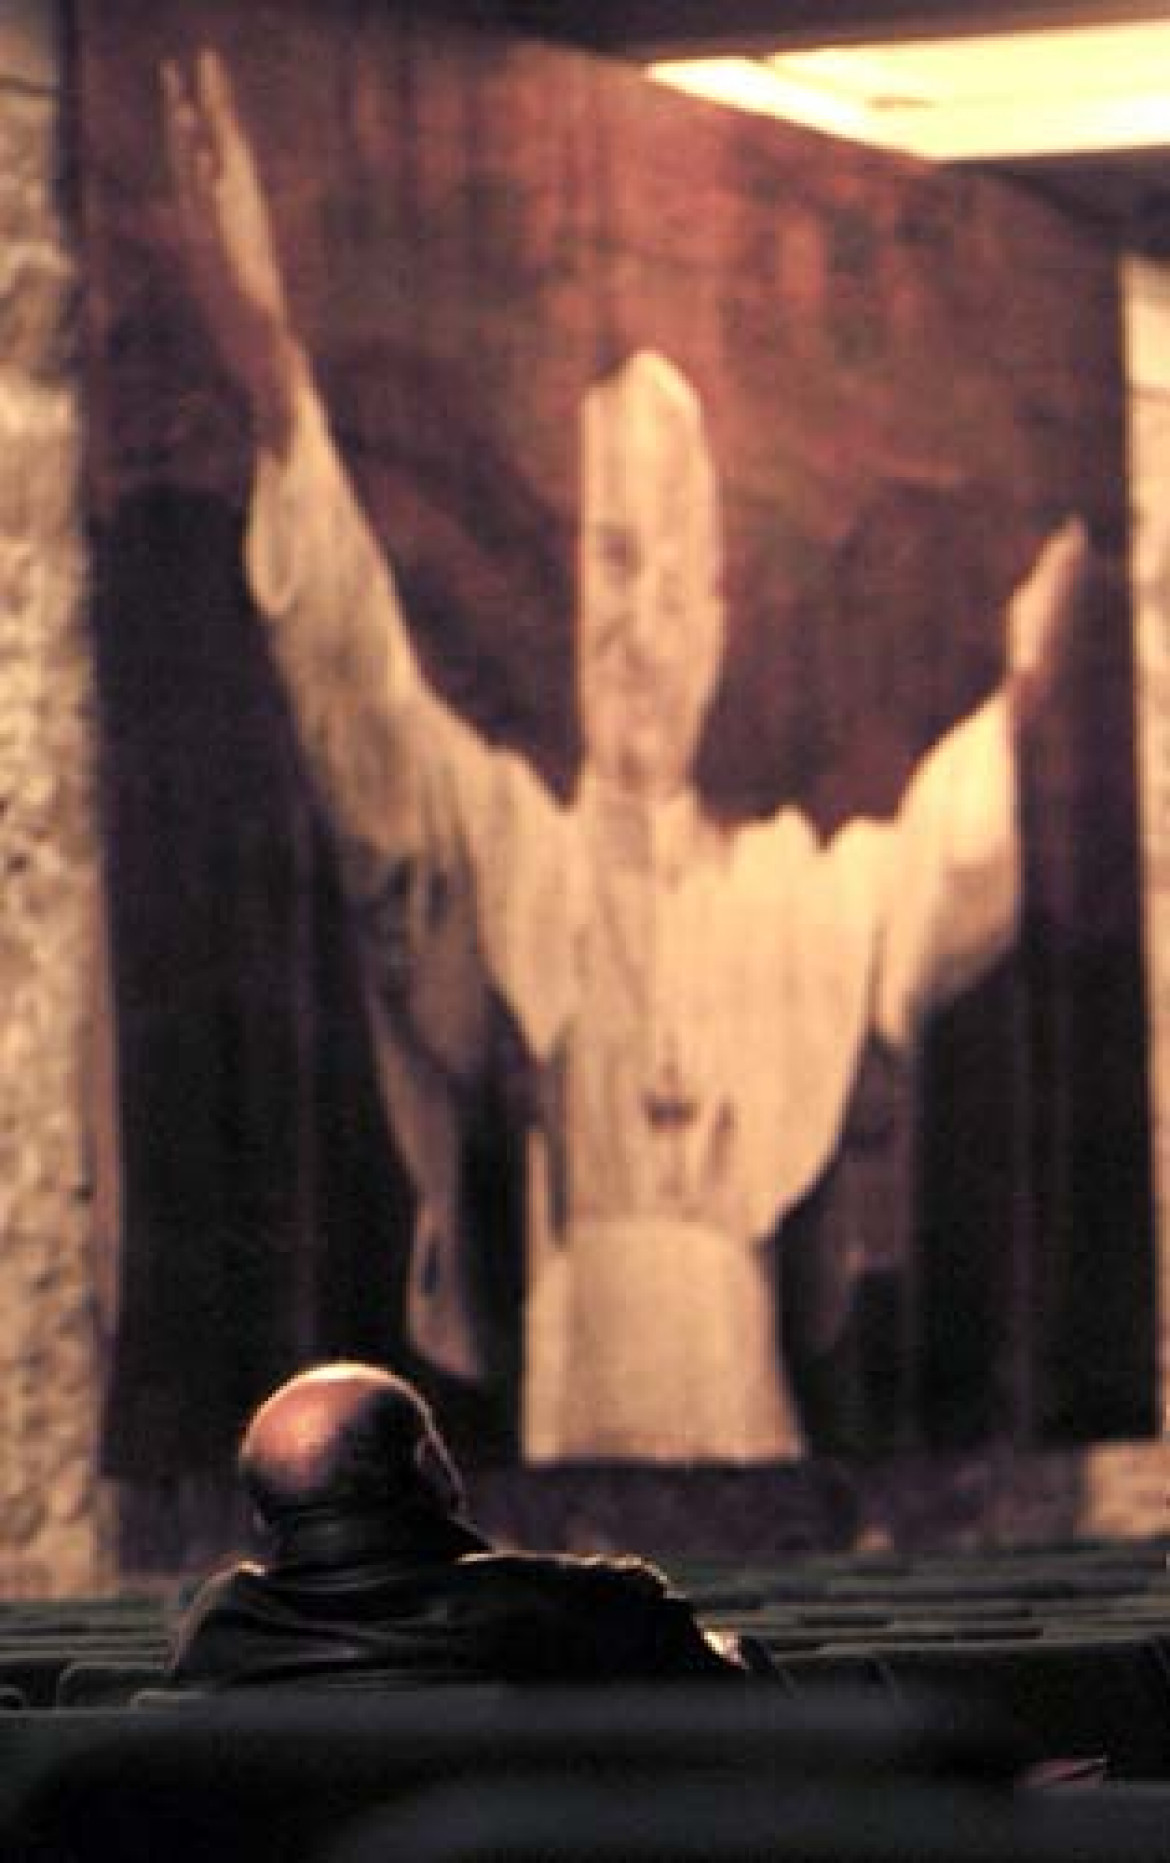 fot. Maciej Haraziński, wierni modlący się i czuwający w chwilę po śmierci Jana Pawła II w klasztorze na Jasnej Górze w Częstochowie